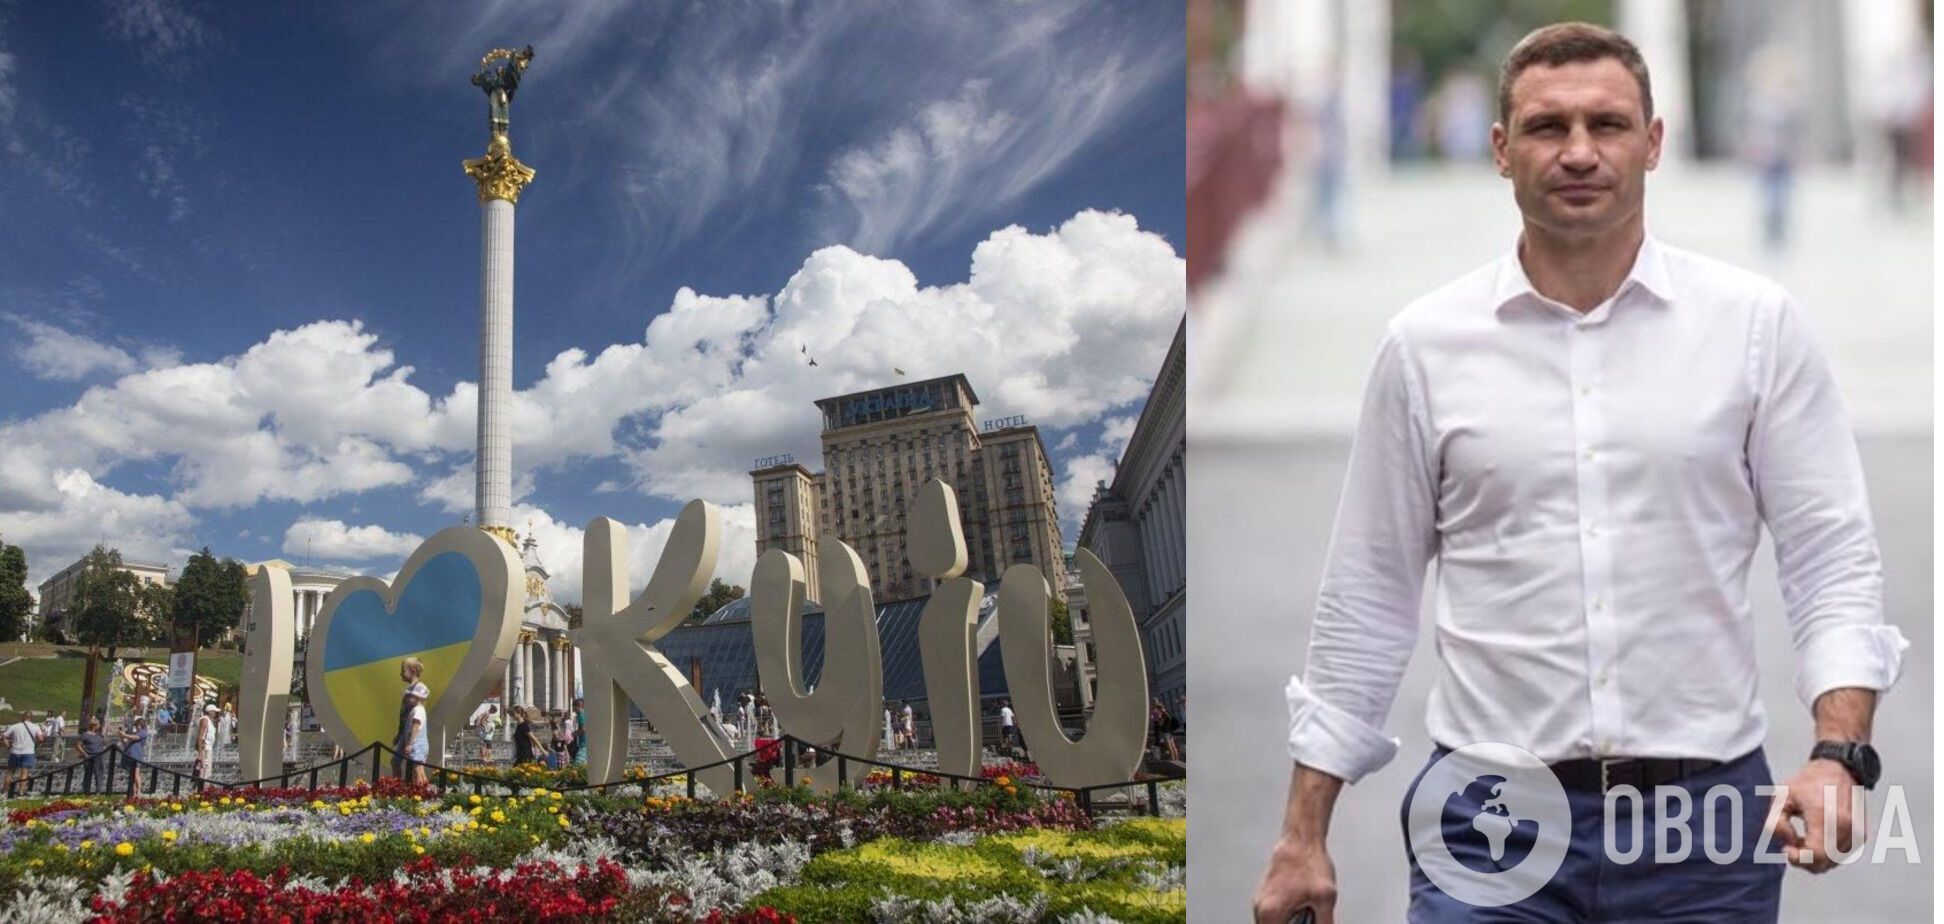 Кличко показал, как мир поздравляет Киев с Днем города. Видео